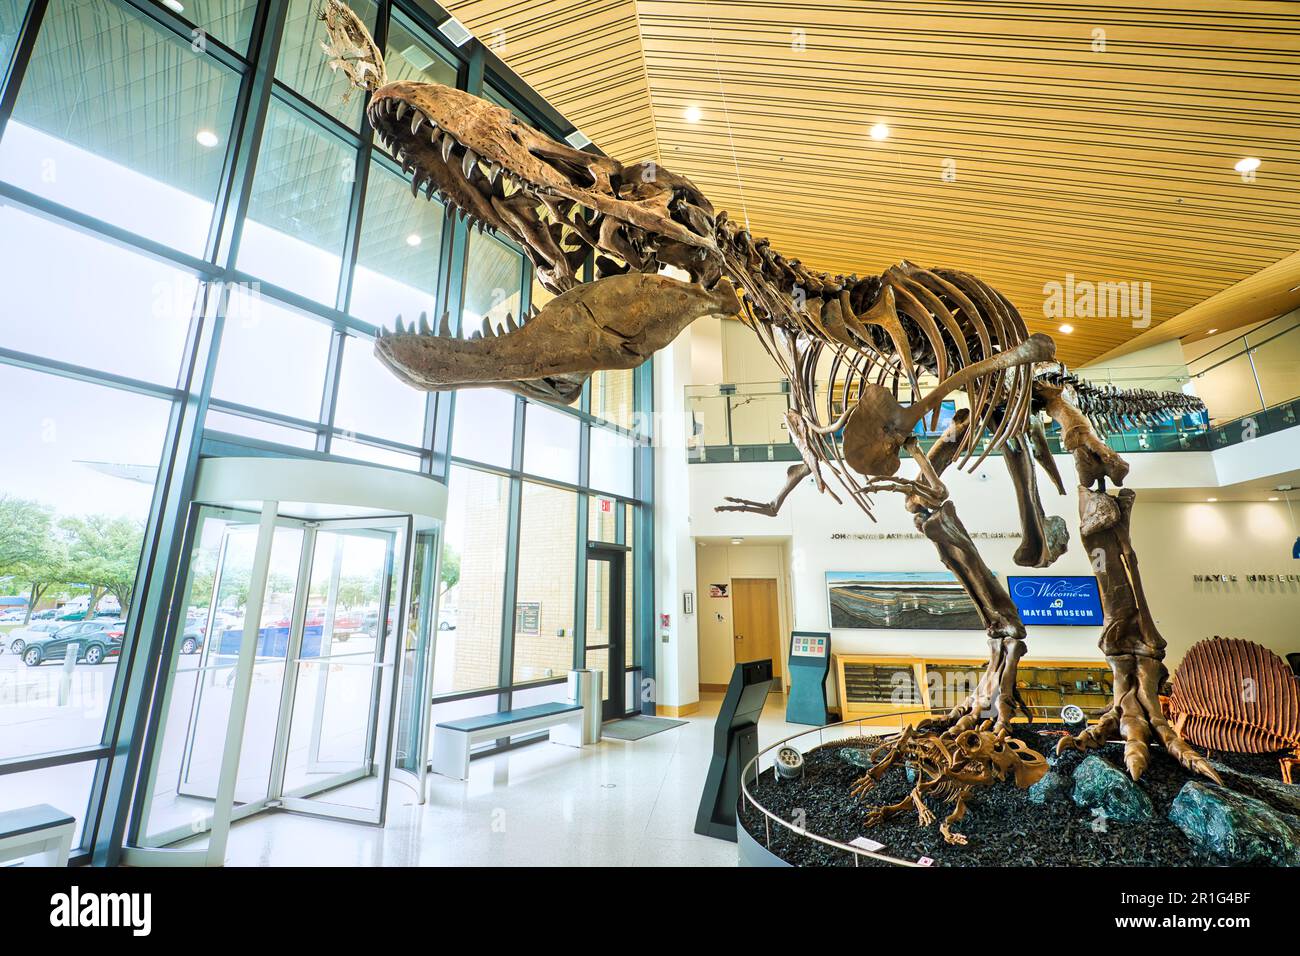 Im Mayer Museum an der Angelo State University in San Angelo, Texas, befindet sich ein Dinosaurierskelett. Stockfoto